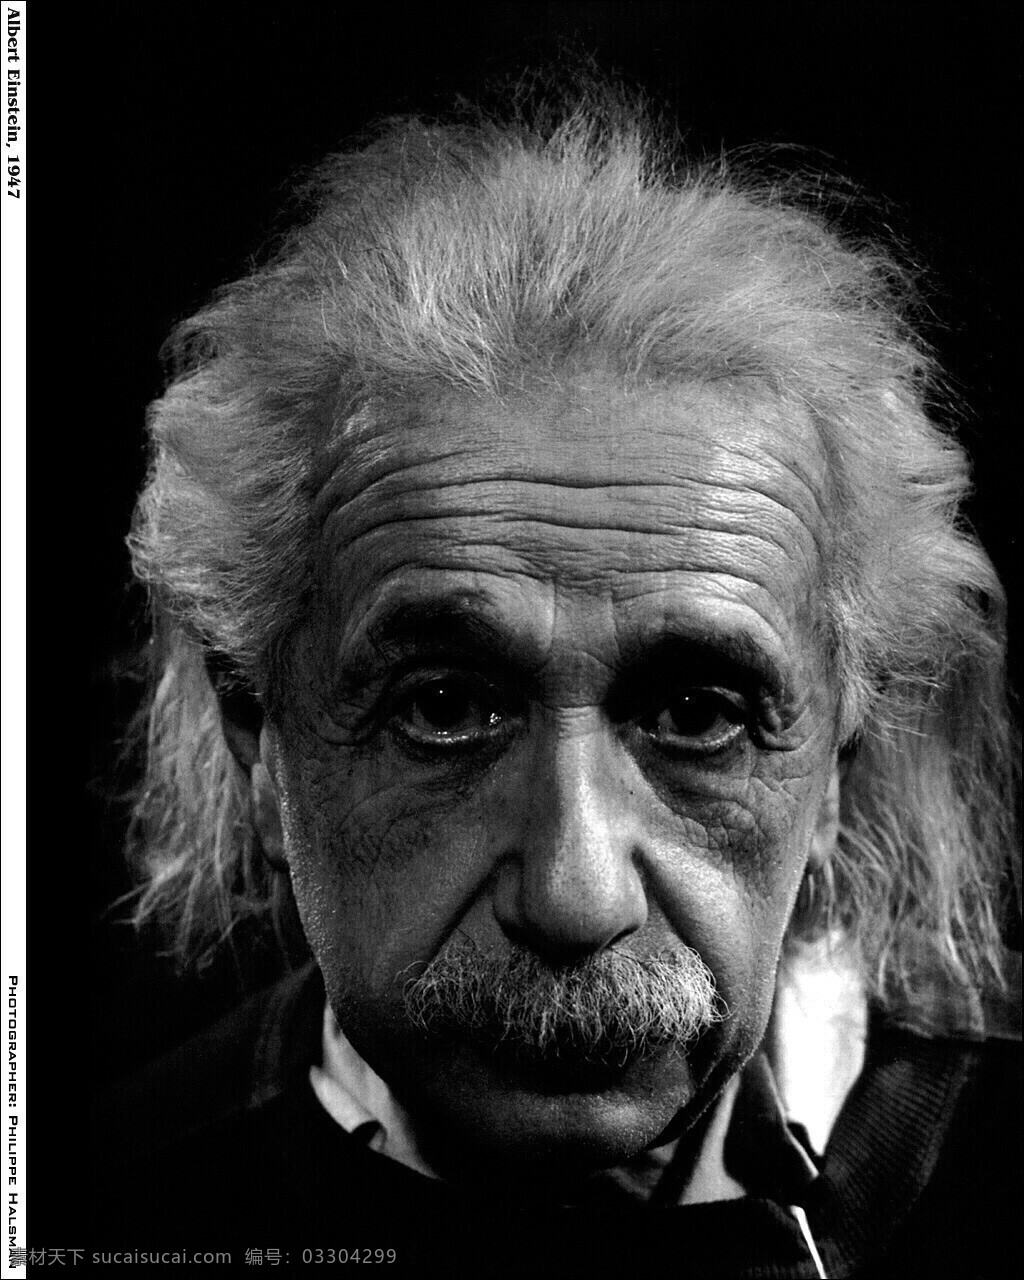 爱因斯坦 科学家 天才 犹太人 人物摄影 人物图库